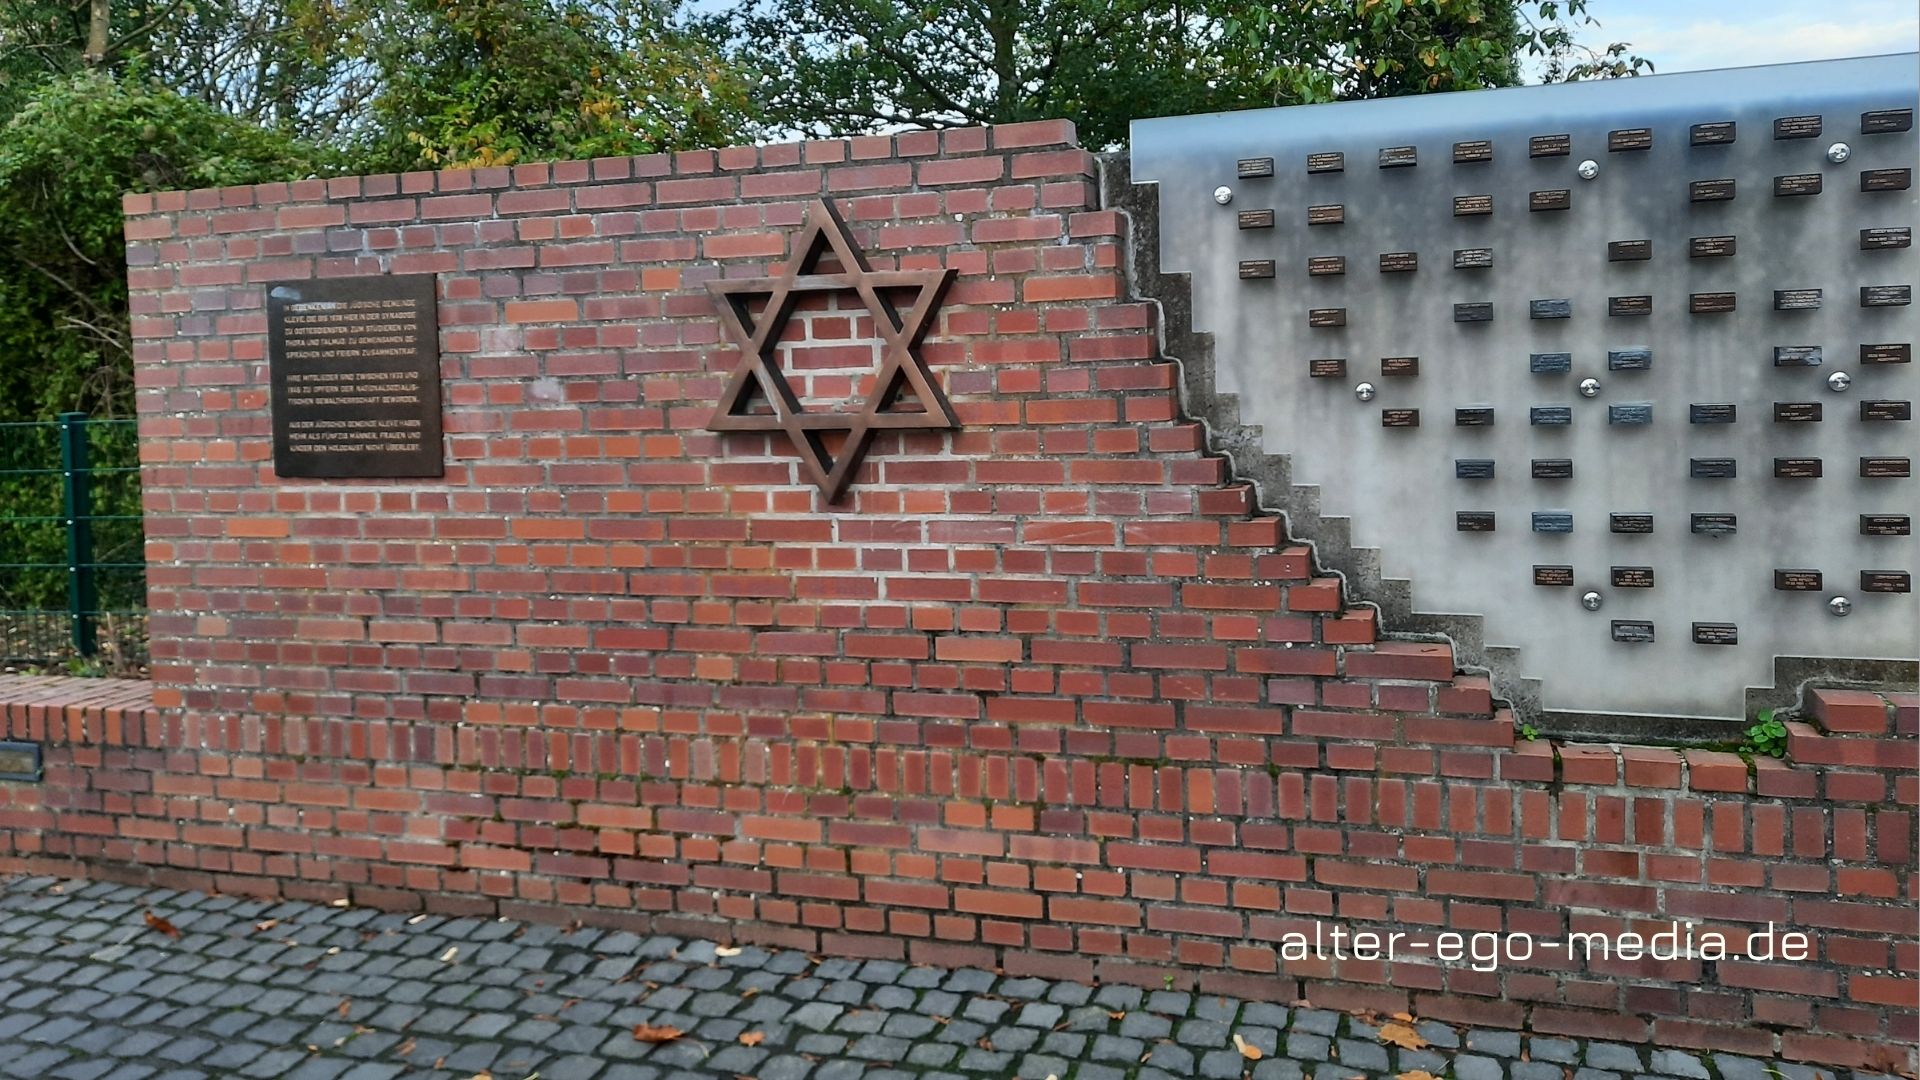 Мемориал в Клеве погибшим евреям